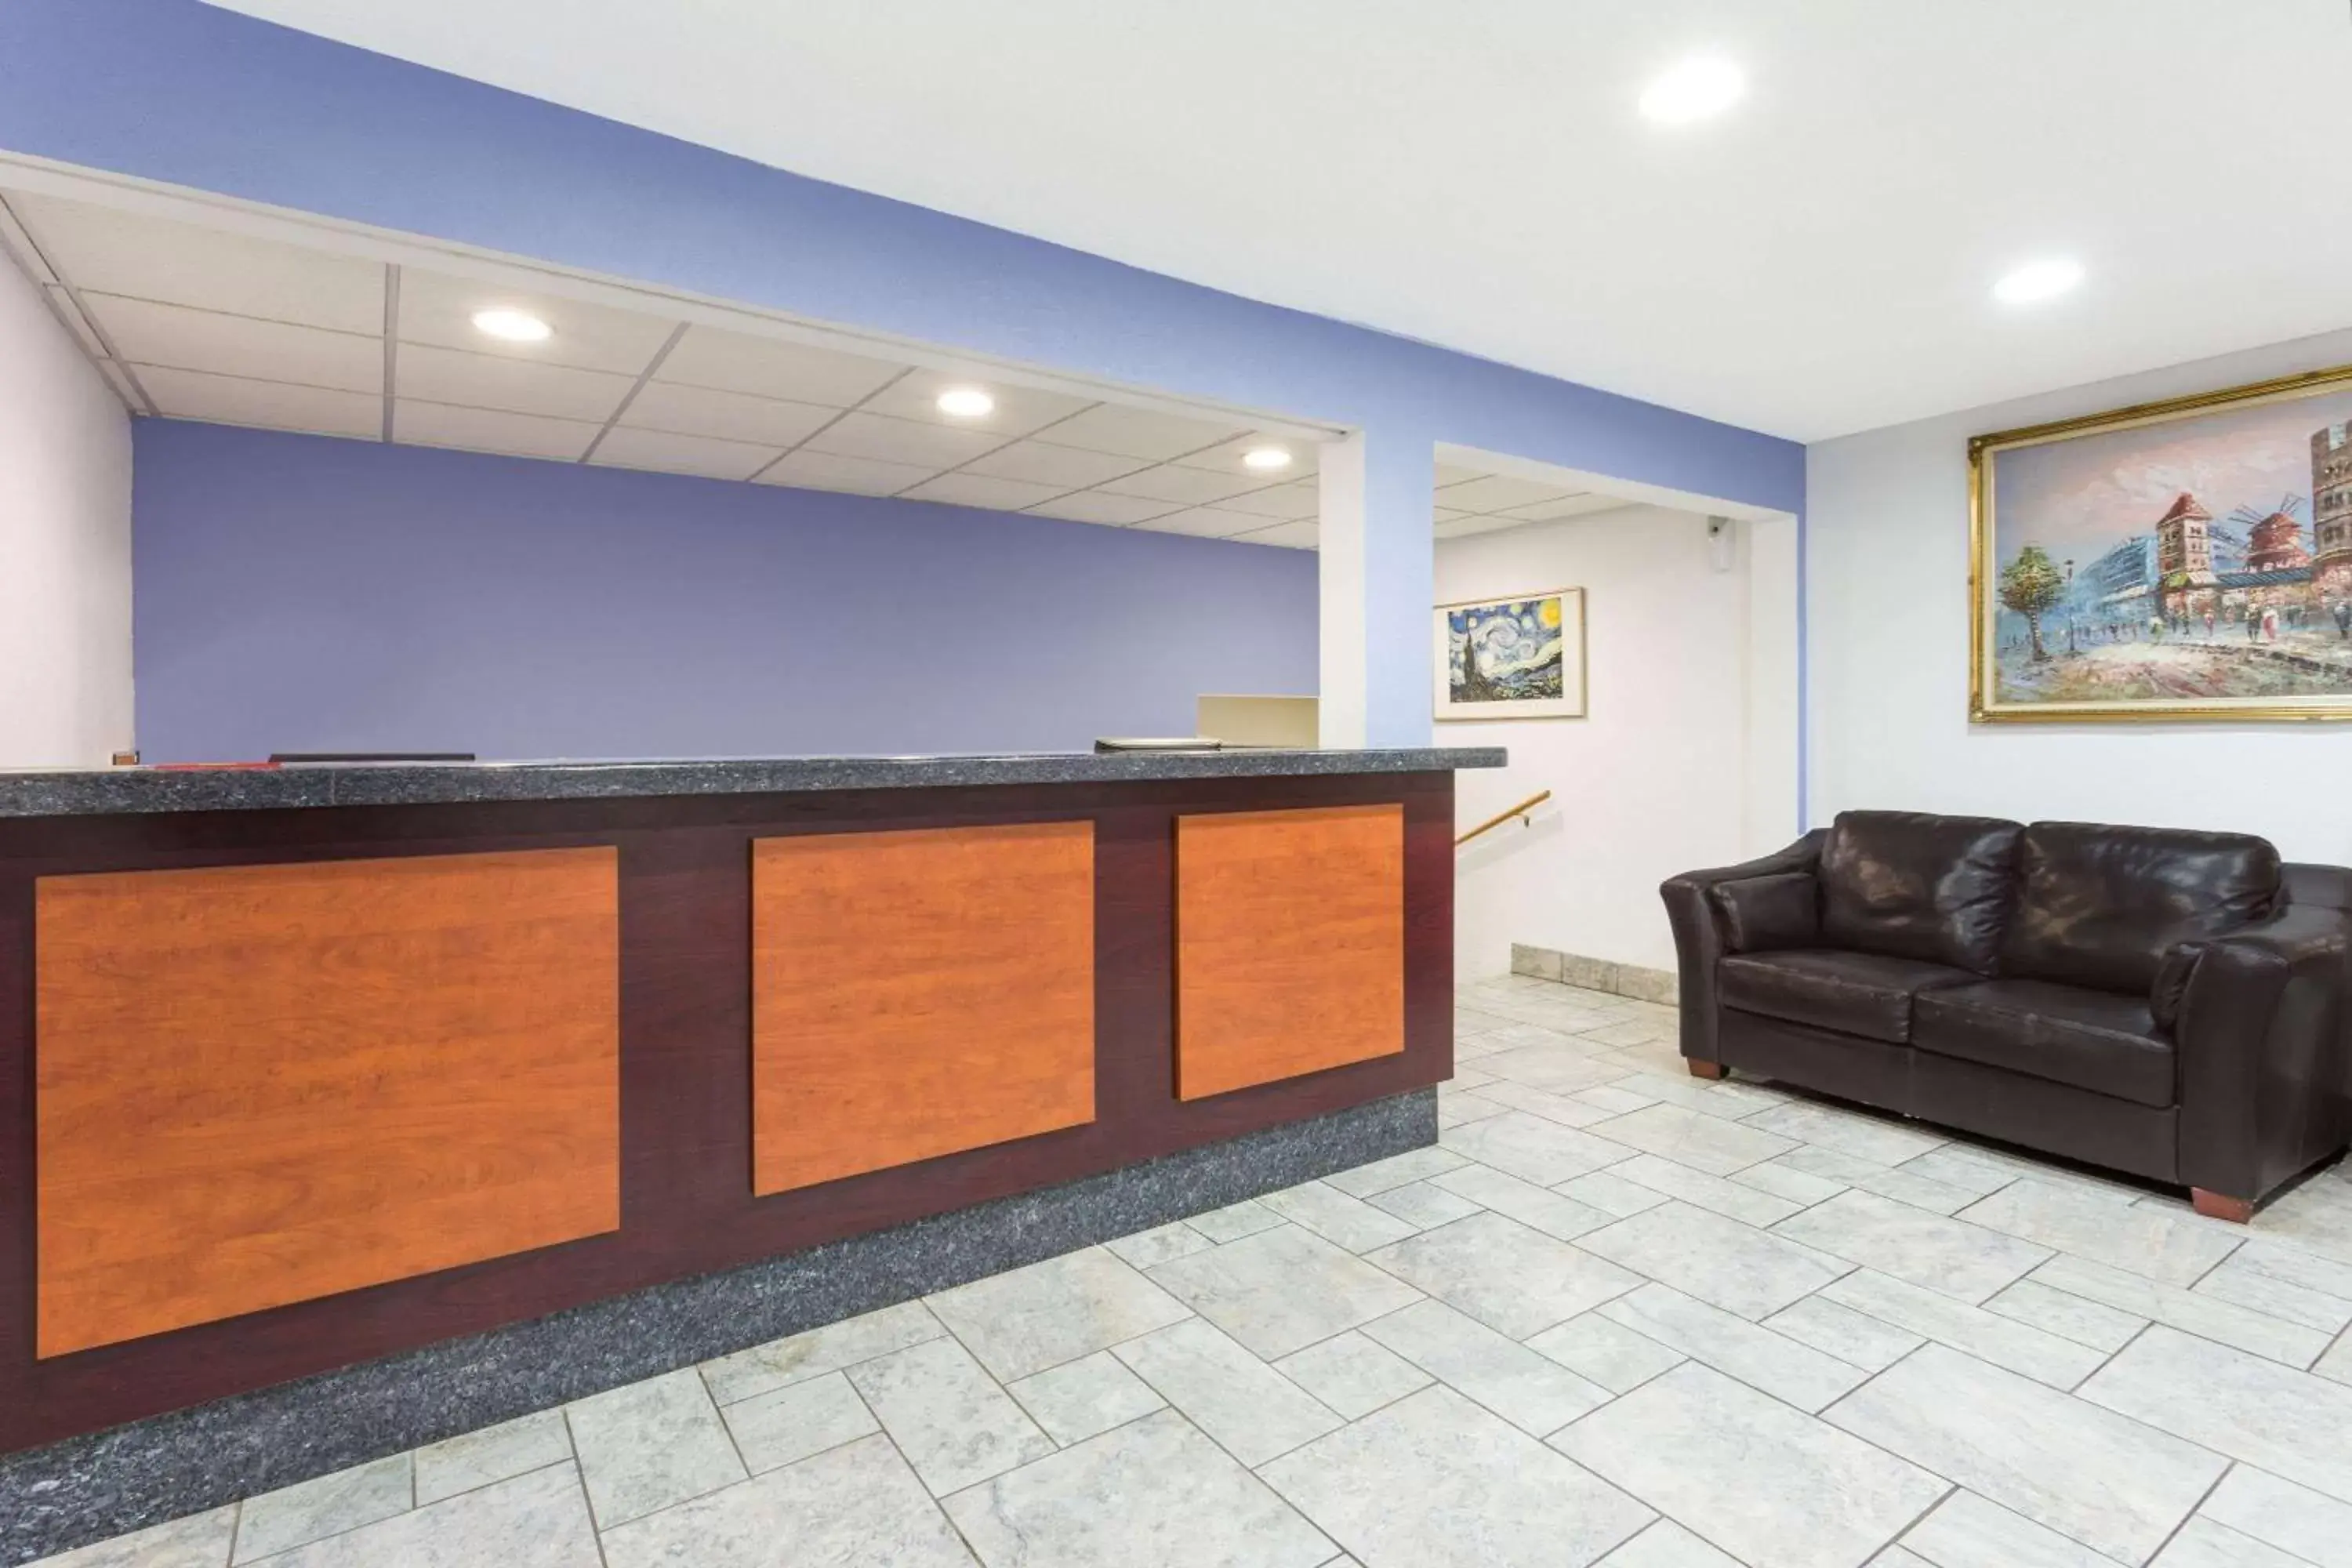 Lobby or reception, Lobby/Reception in Super 8 by Wyndham Kenosha/Pleasant Prairie